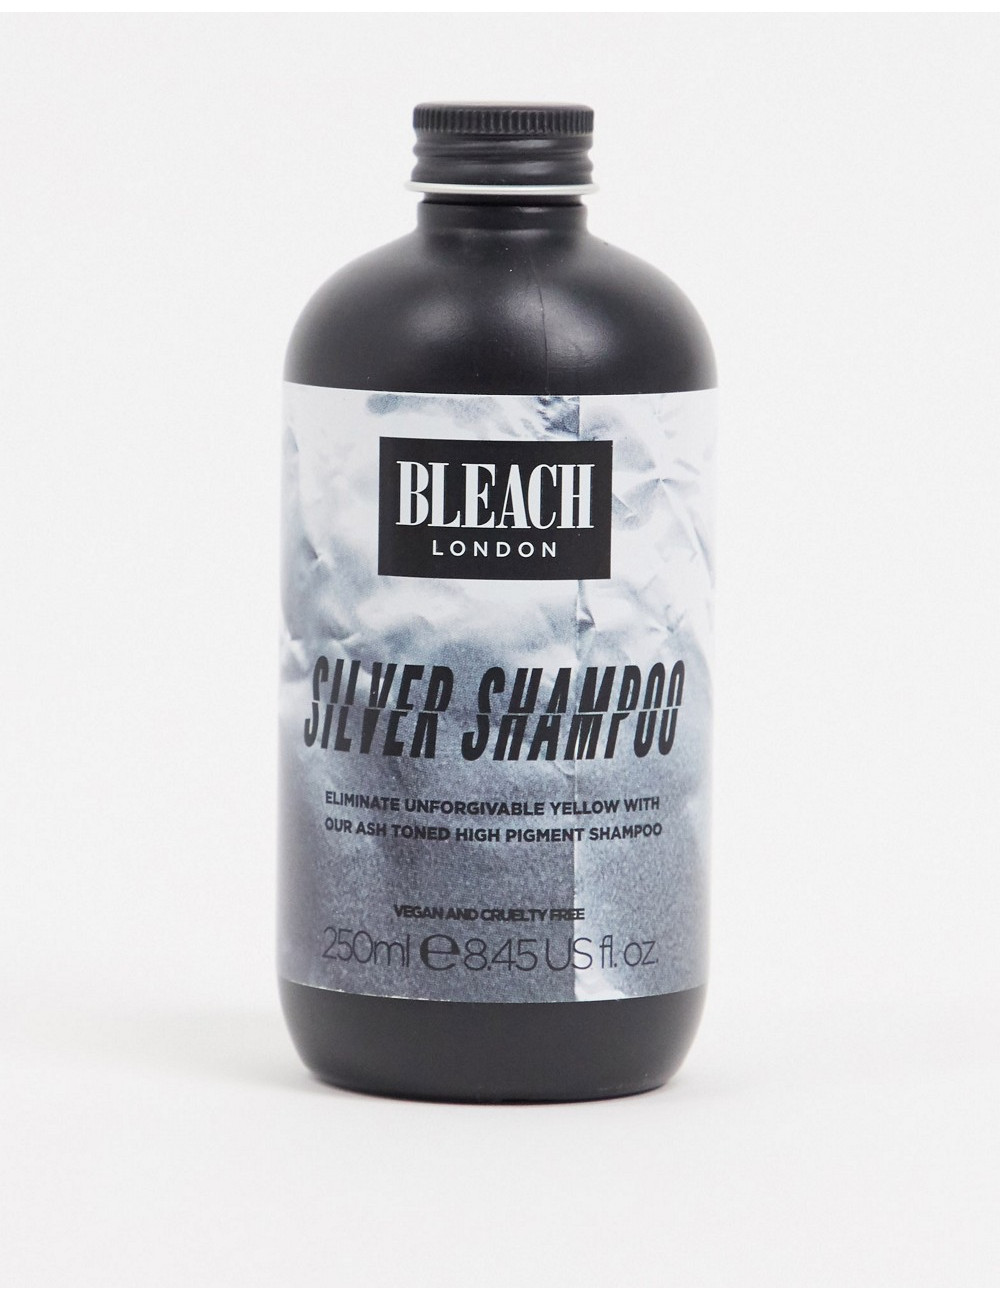 BLEACH LONDON Silver Shampoo